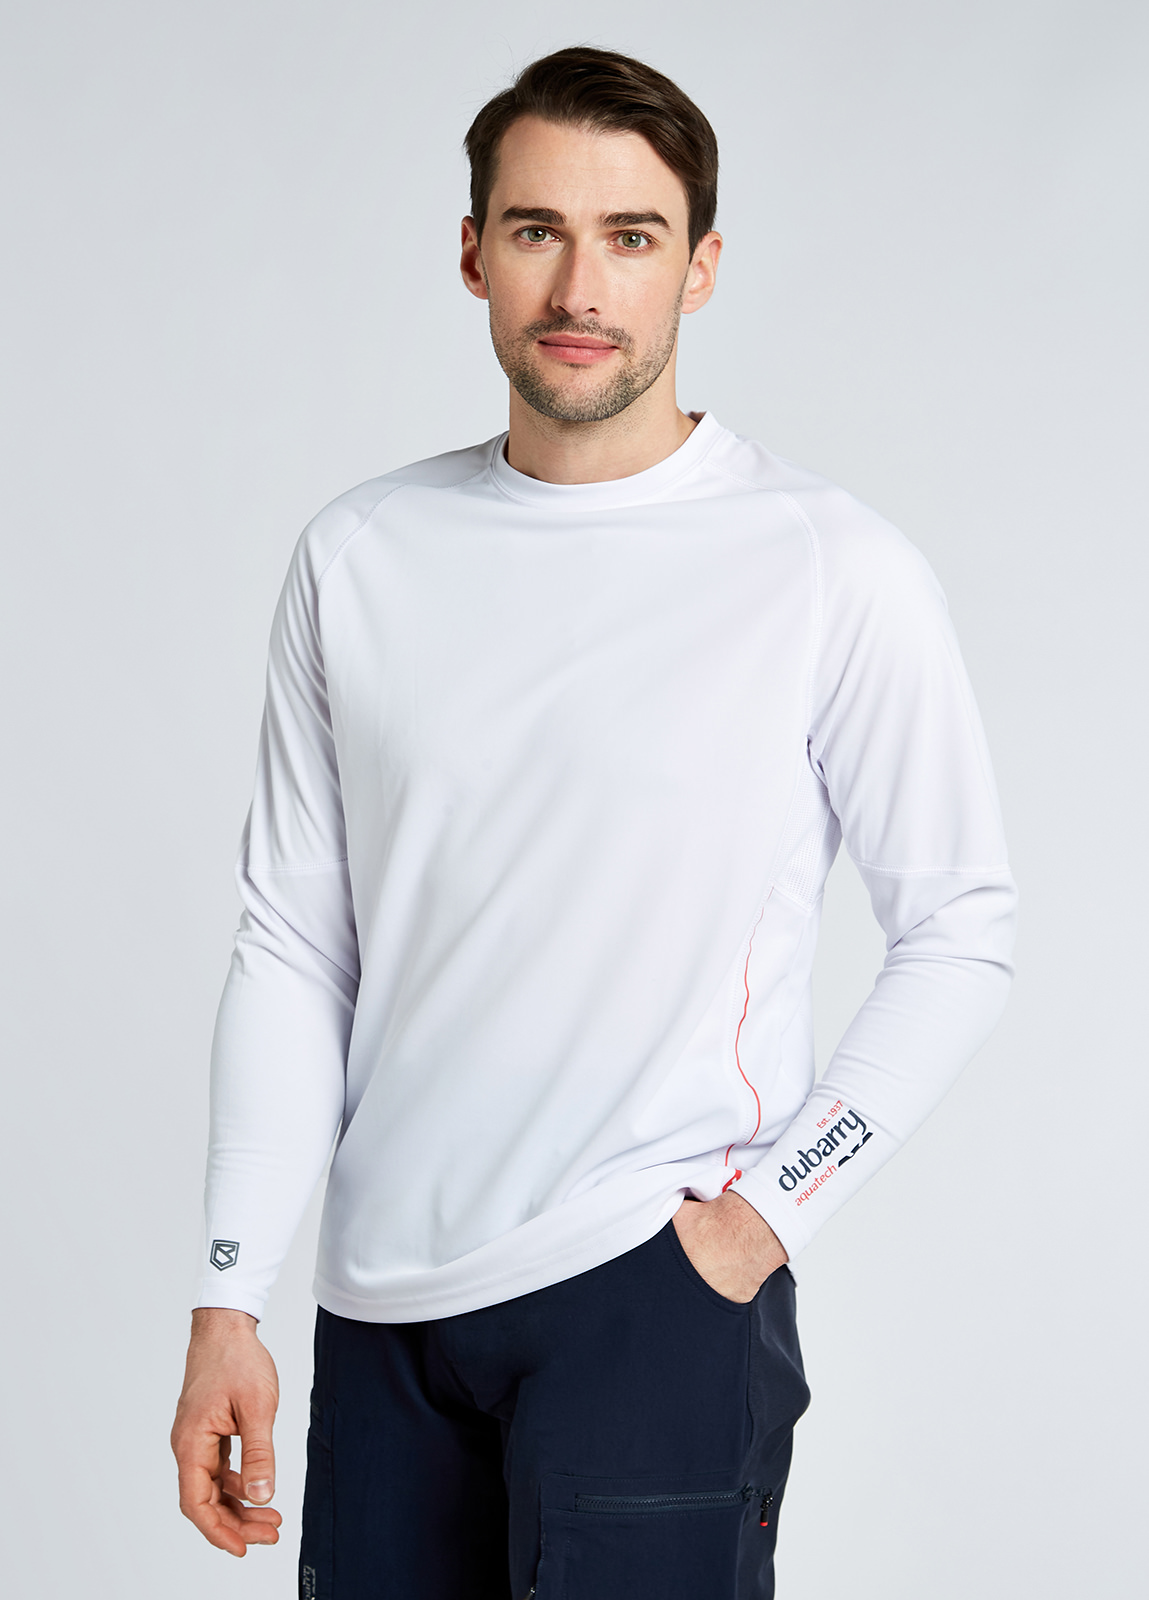 Ancona Unisex Long-sleeved t-shirt - White